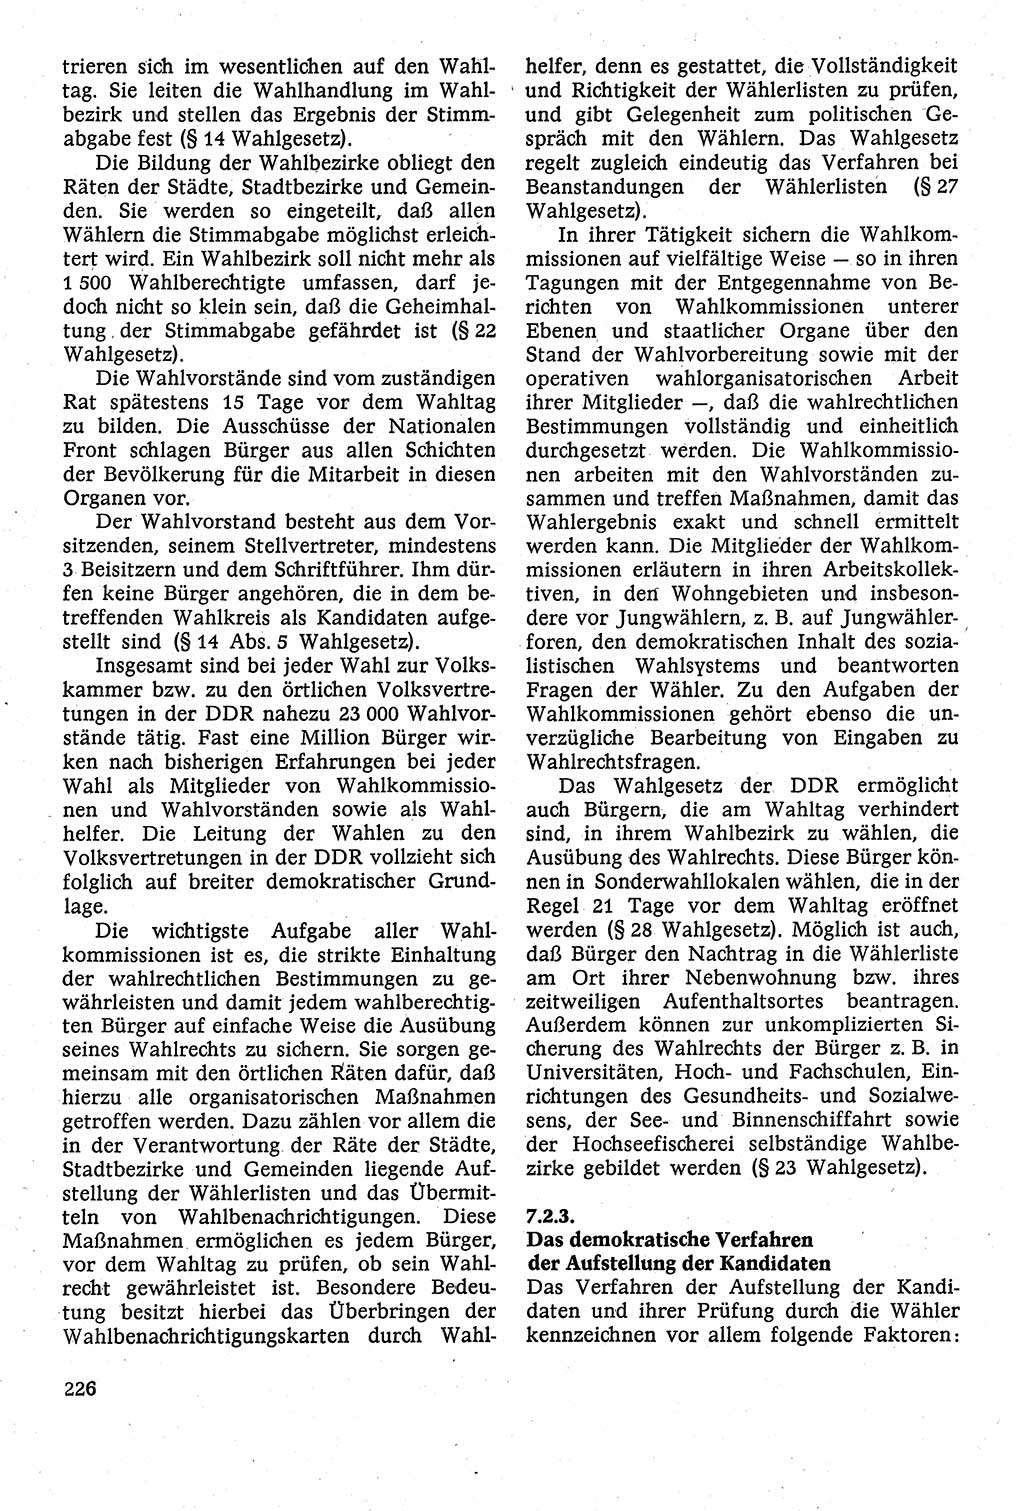 Staatsrecht der DDR [Deutsche Demokratische Republik (DDR)], Lehrbuch 1984, Seite 226 (St.-R. DDR Lb. 1984, S. 226)